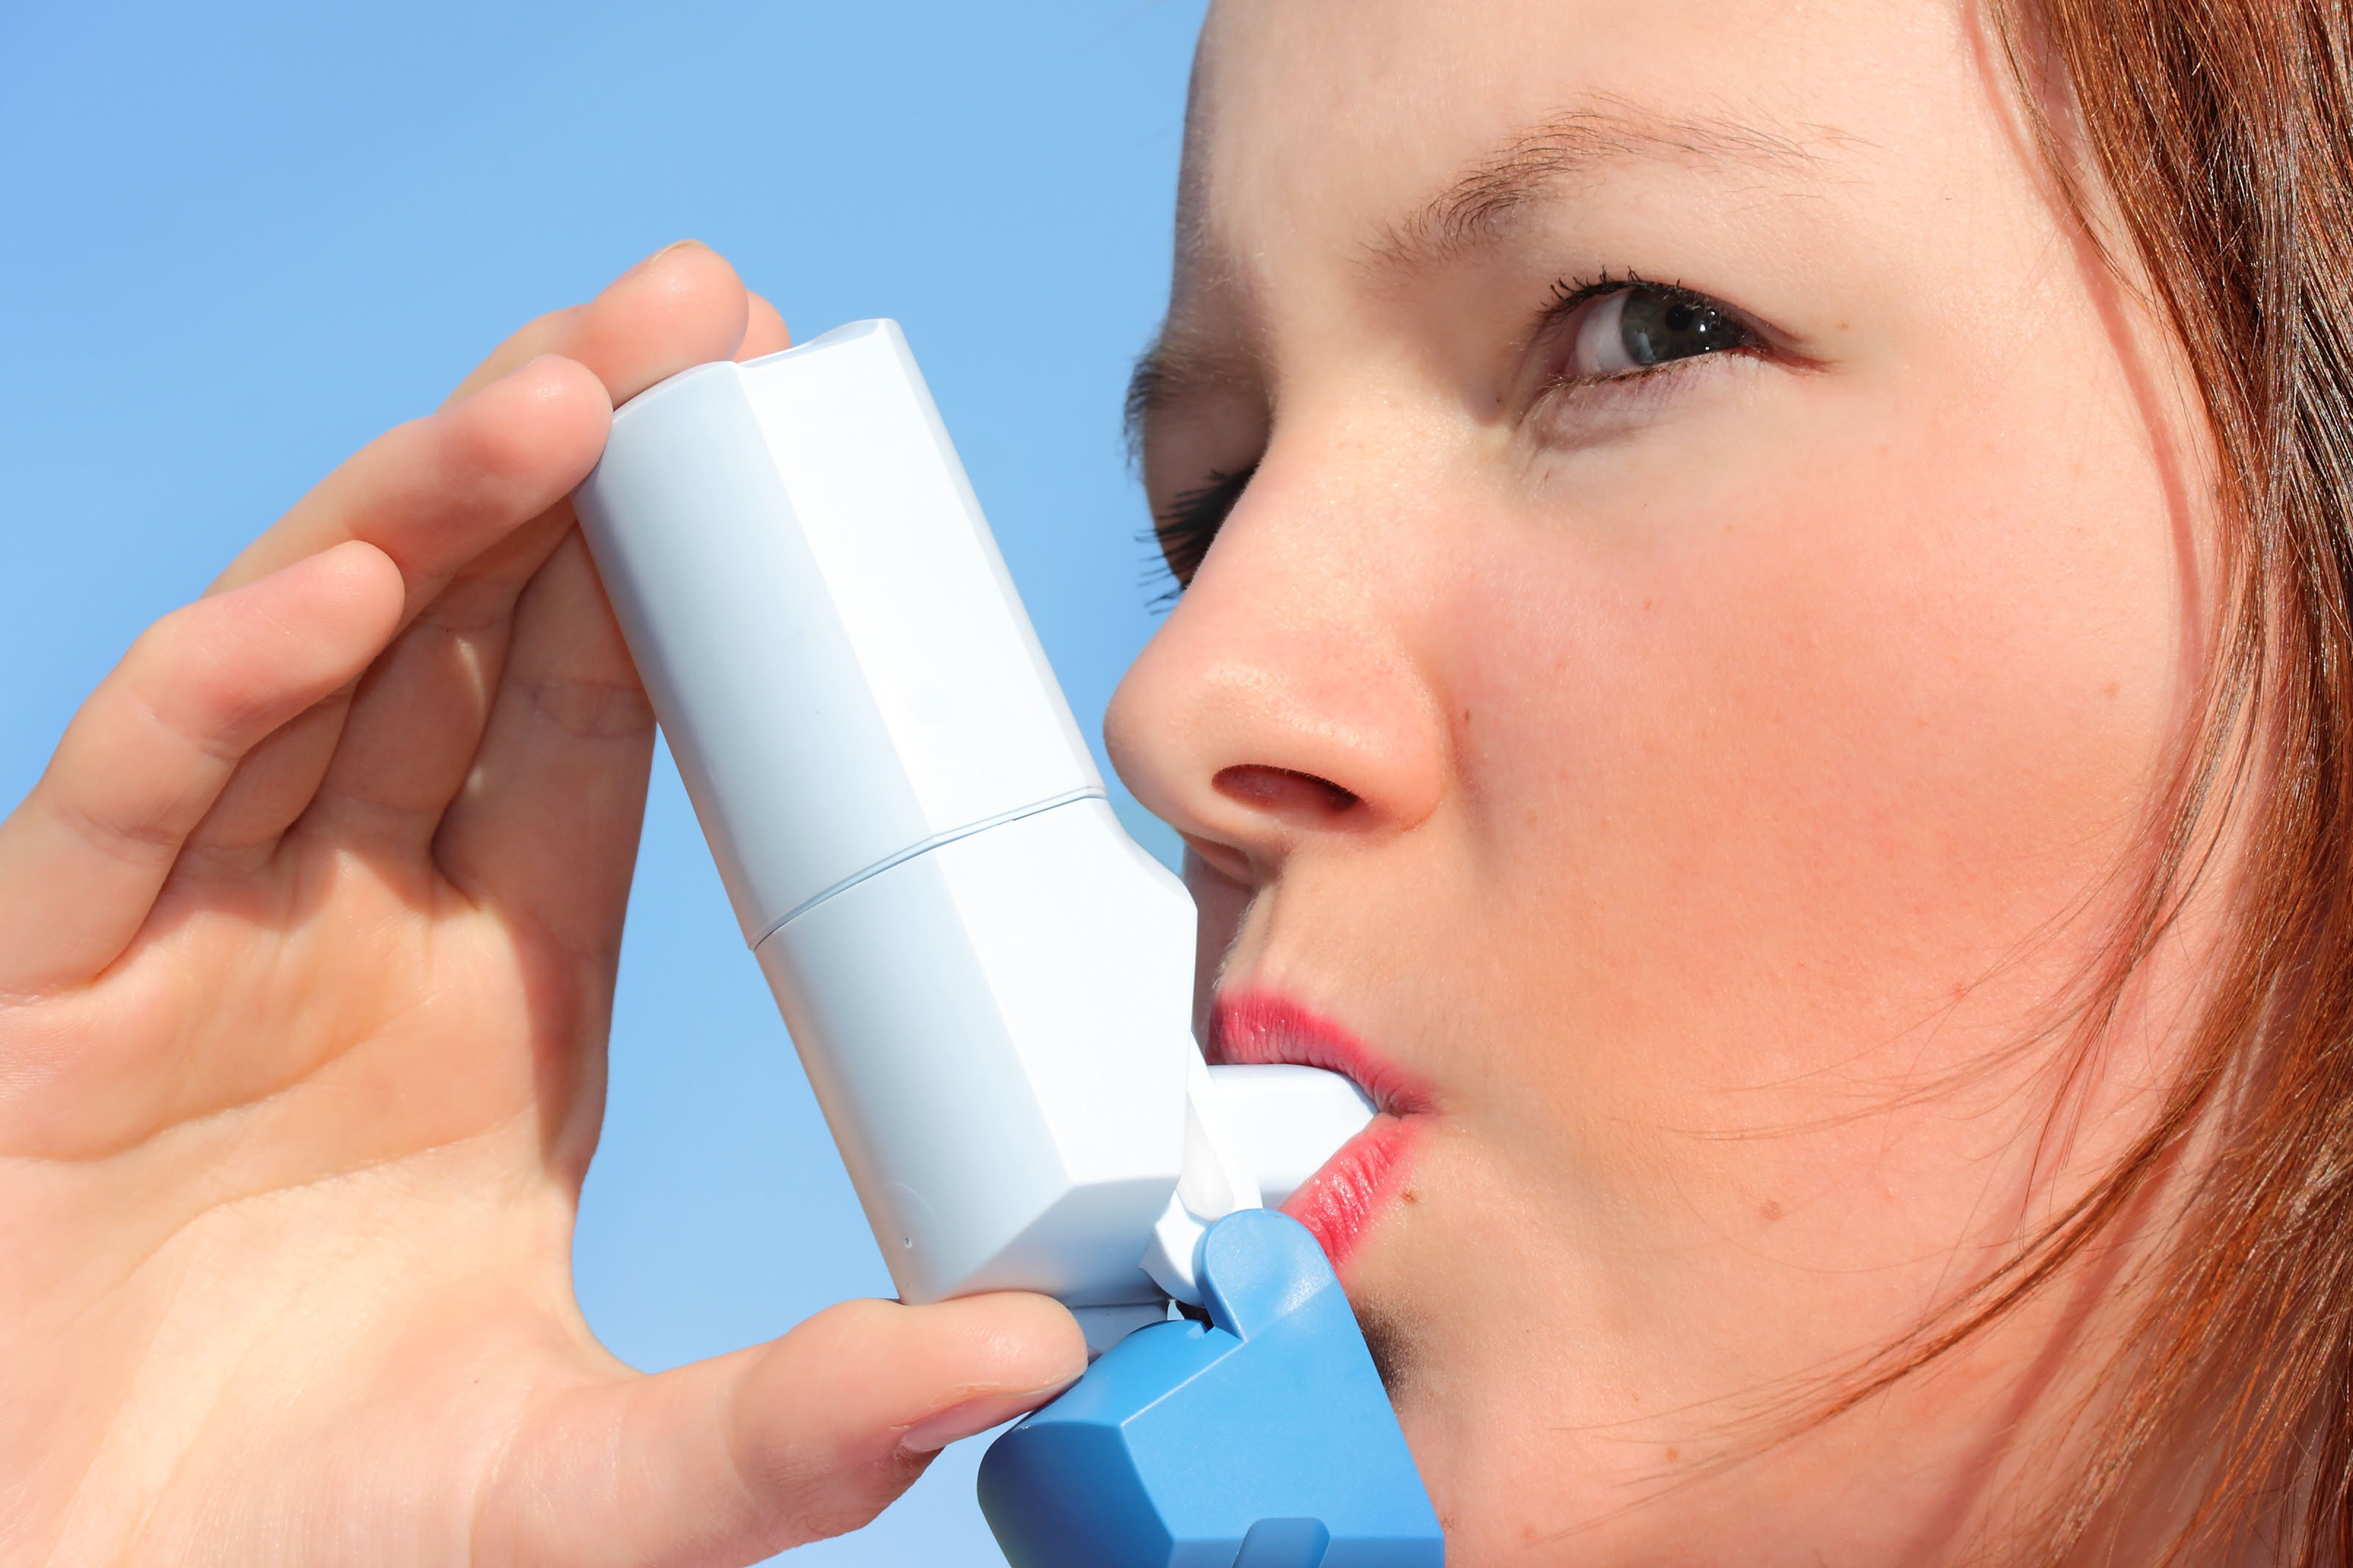 Del 30% al 50% de los pacientes asmáticos están insuficientemente controlados